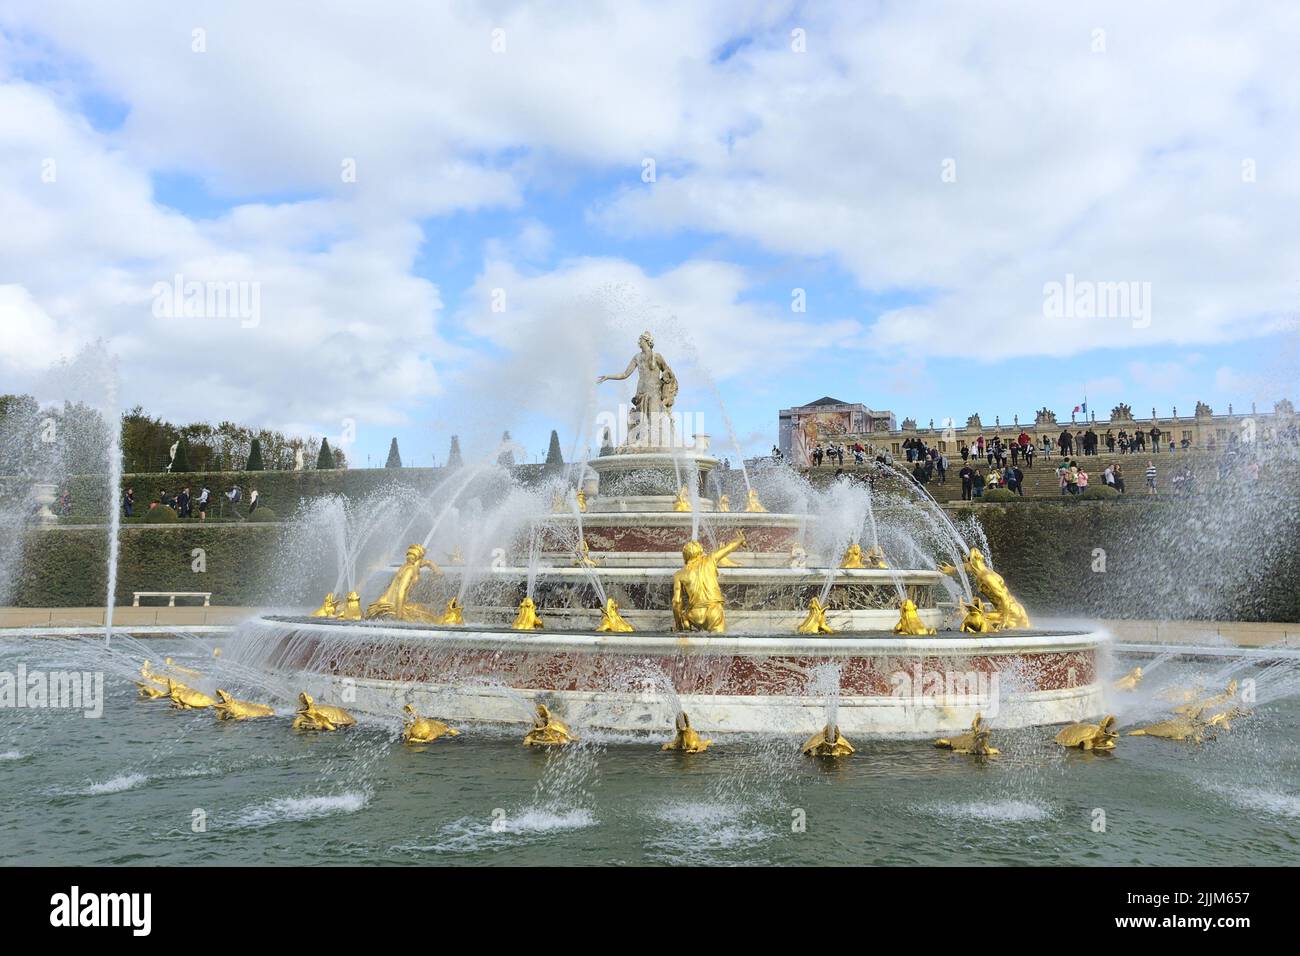 La Fontana di Latona nella reggia di Versailles in una giornata nuvolosa a Parigi, Francia Foto Stock